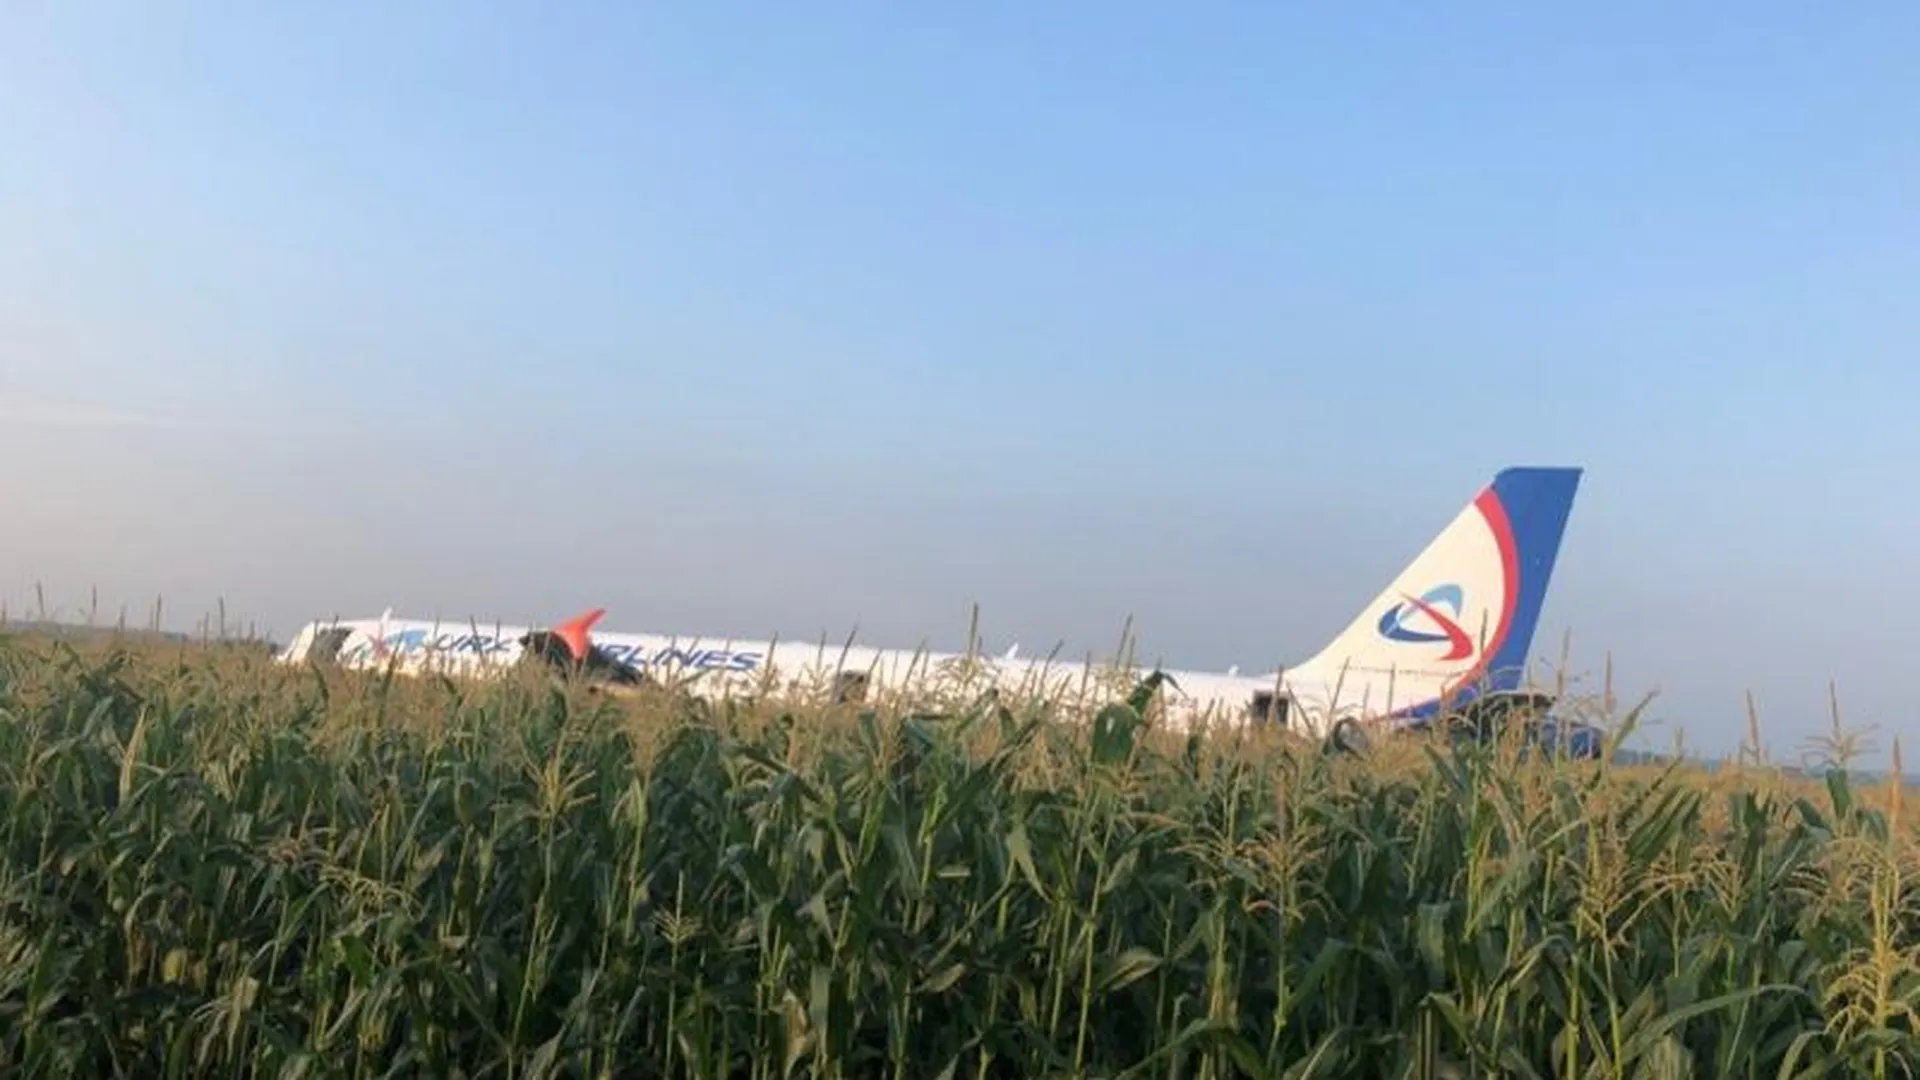 Пассажирский самолет экстренно сел в открытом поле в Раменском